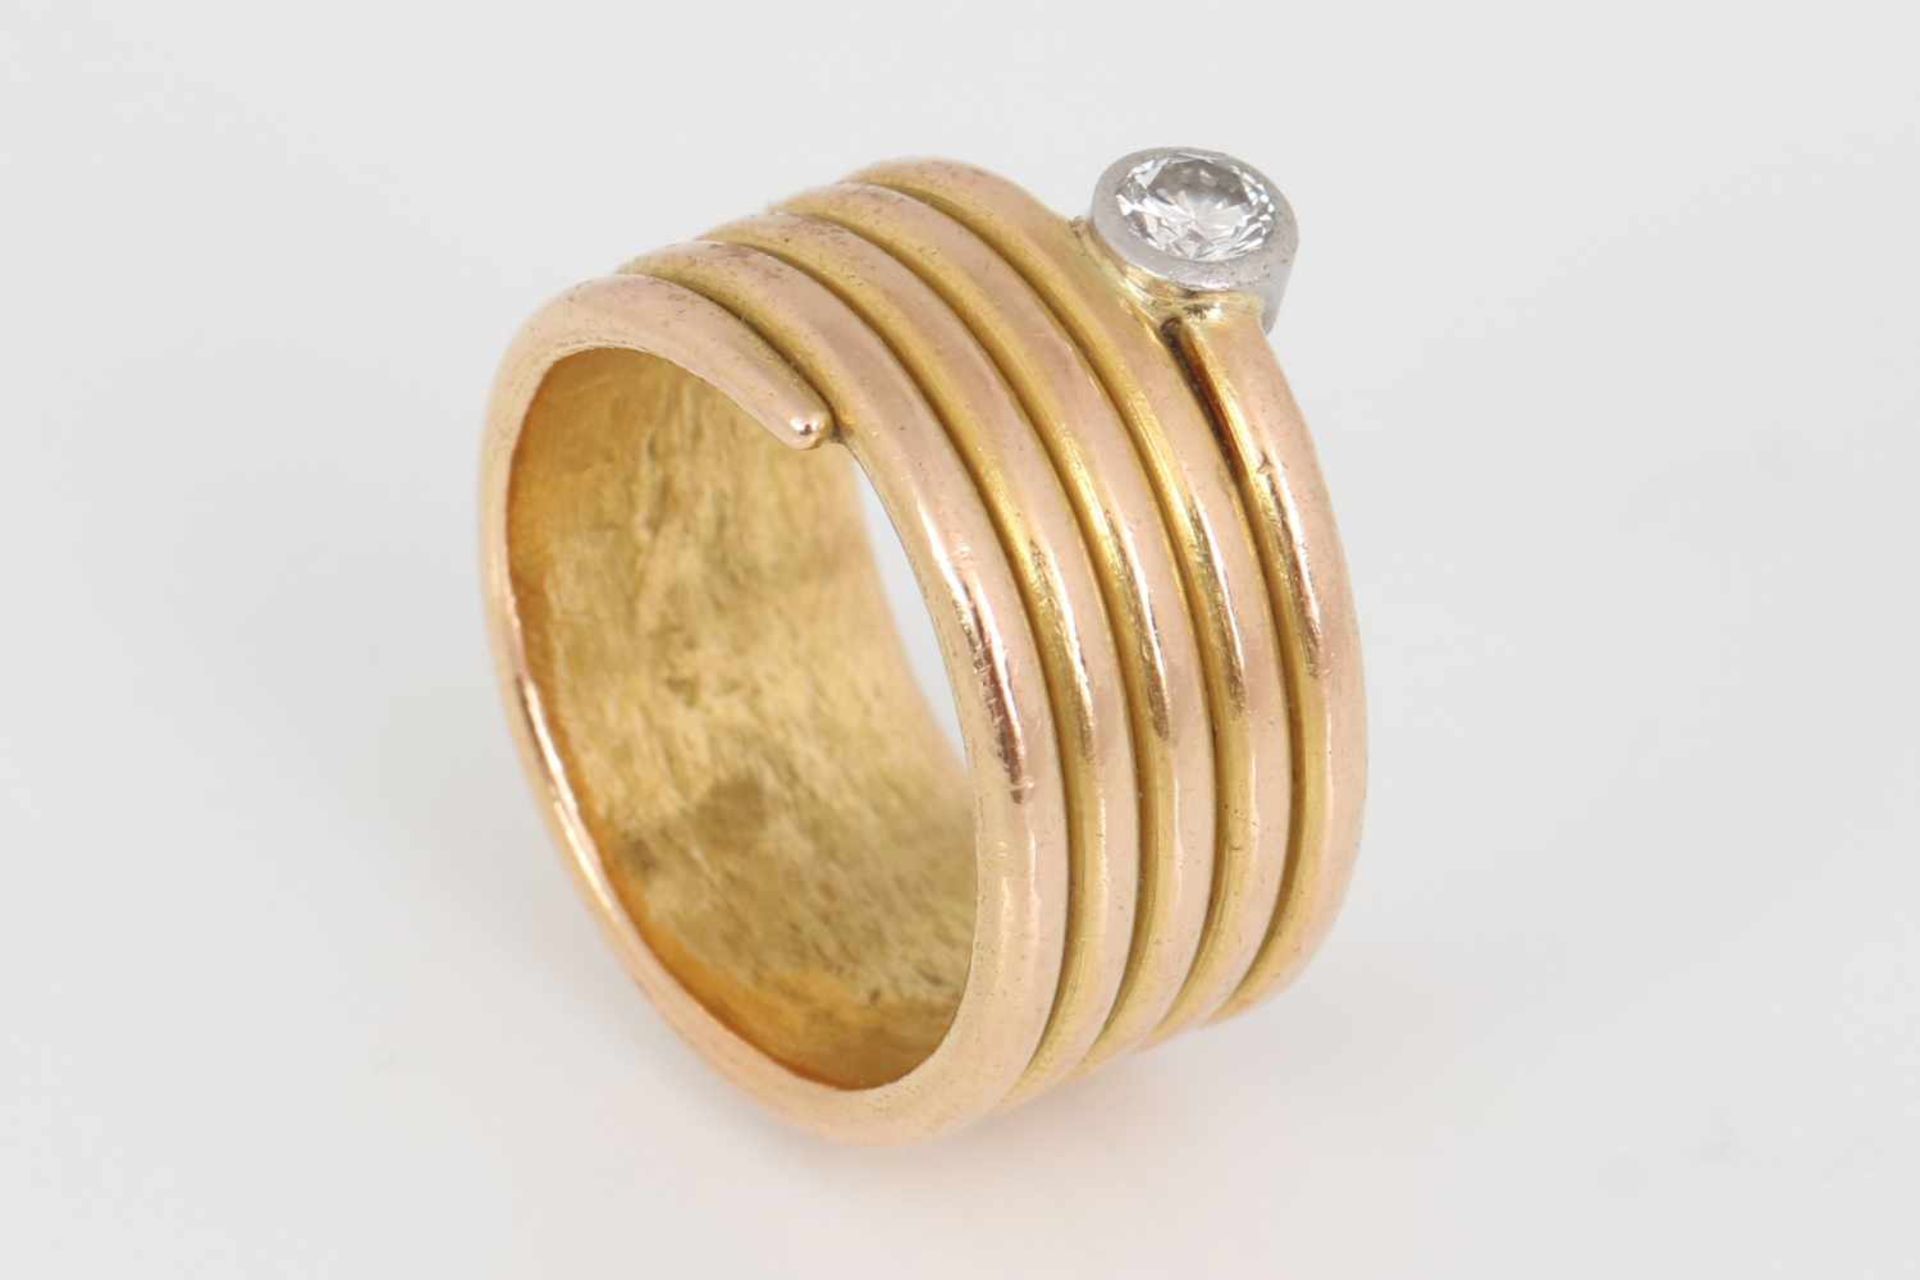 Goldring mit DiamantRoségold, spiralförmige, breite Schiene, 1 Brillant, ca. 0,15ct., vsi, Gewicht - Image 2 of 2